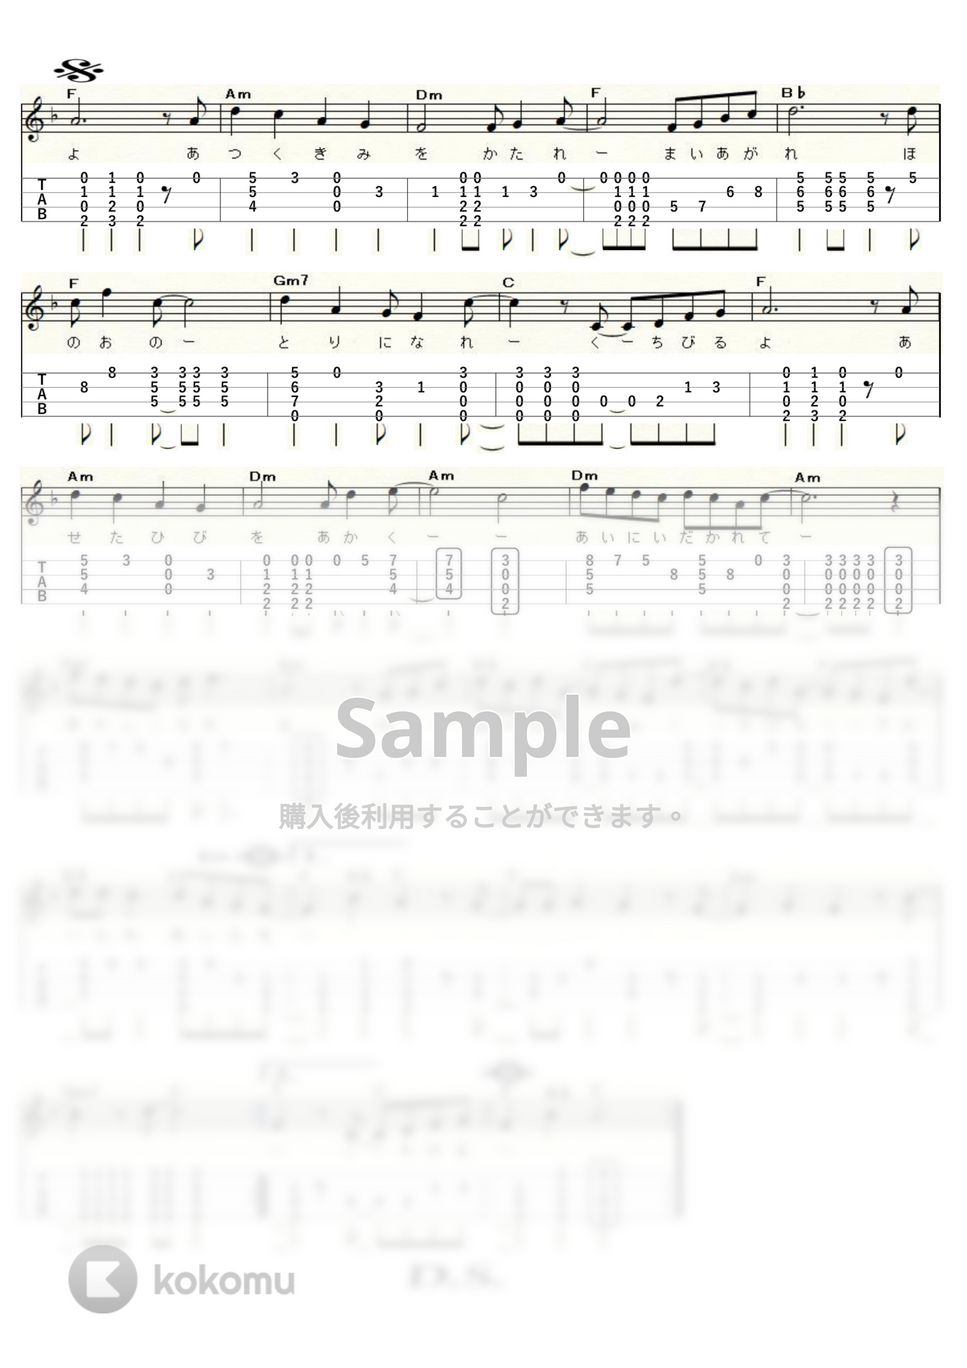 渡辺真知子 - 唇よ、熱く君を語れ (ｳｸﾚﾚｿﾛ / High-G,Low-G / 中級) by ukulelepapa